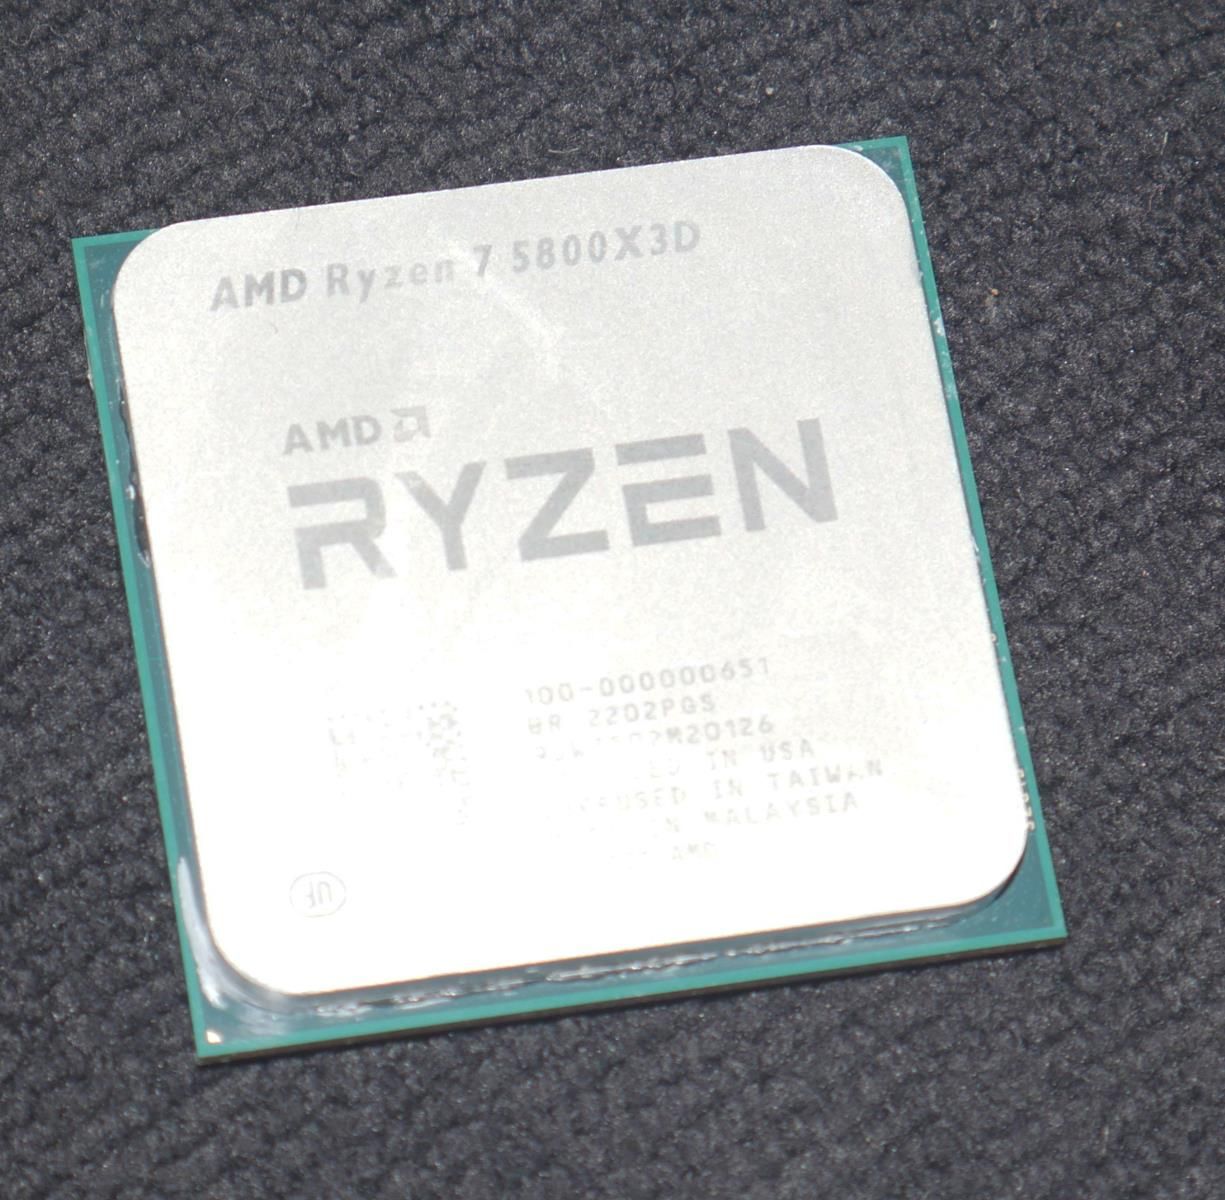 Review AMD Ryzen 7 5800X3D 34